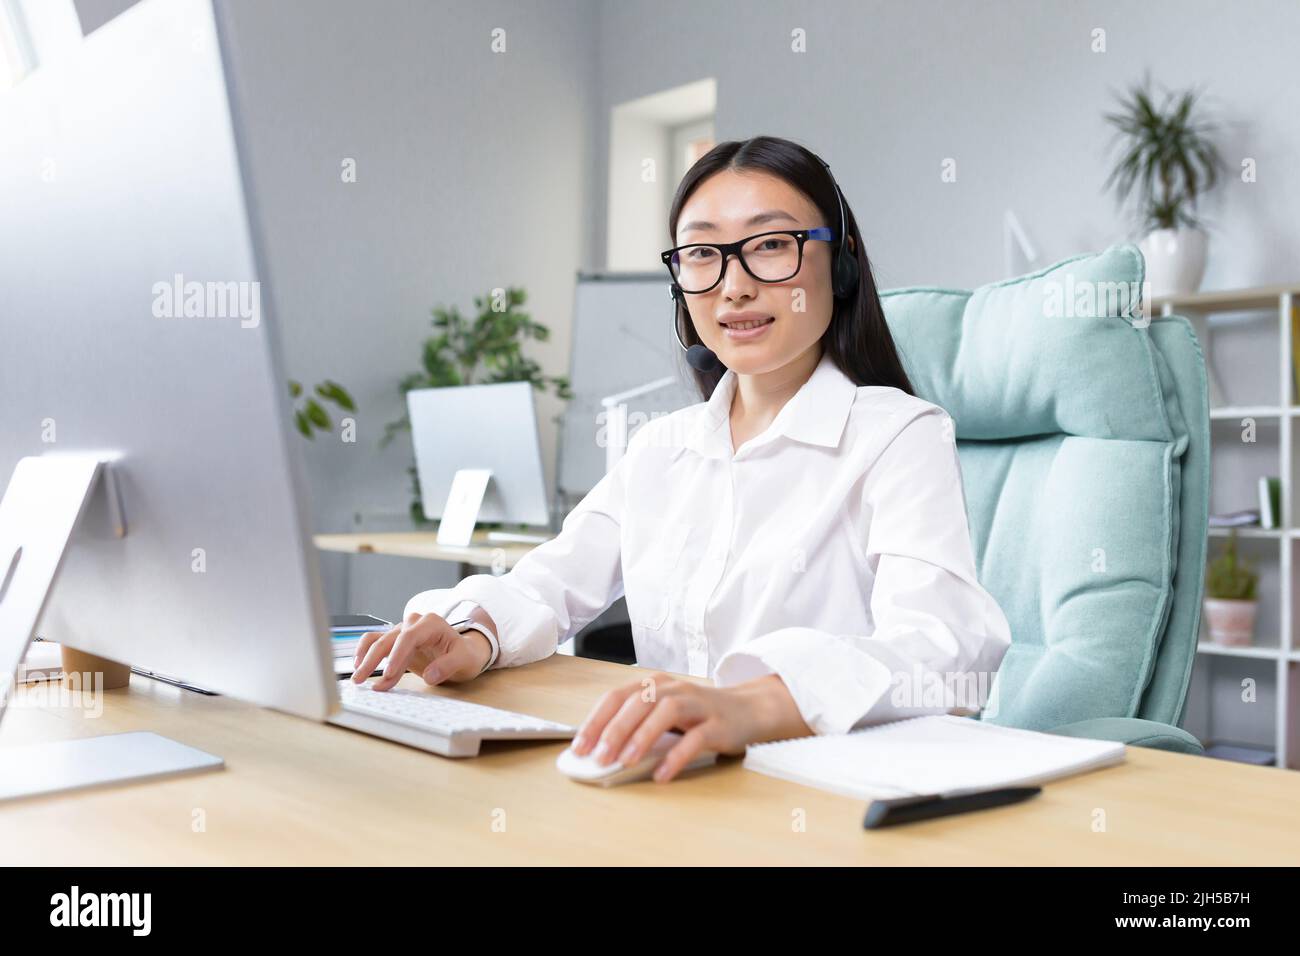 Online-Fernunterricht. Junge schöne asiatische Lehrerin mit Kopfhörern und Brille sitzt an einem Tisch an einem Computer und unterrichtet online eine Klassenstunde. Stockfoto